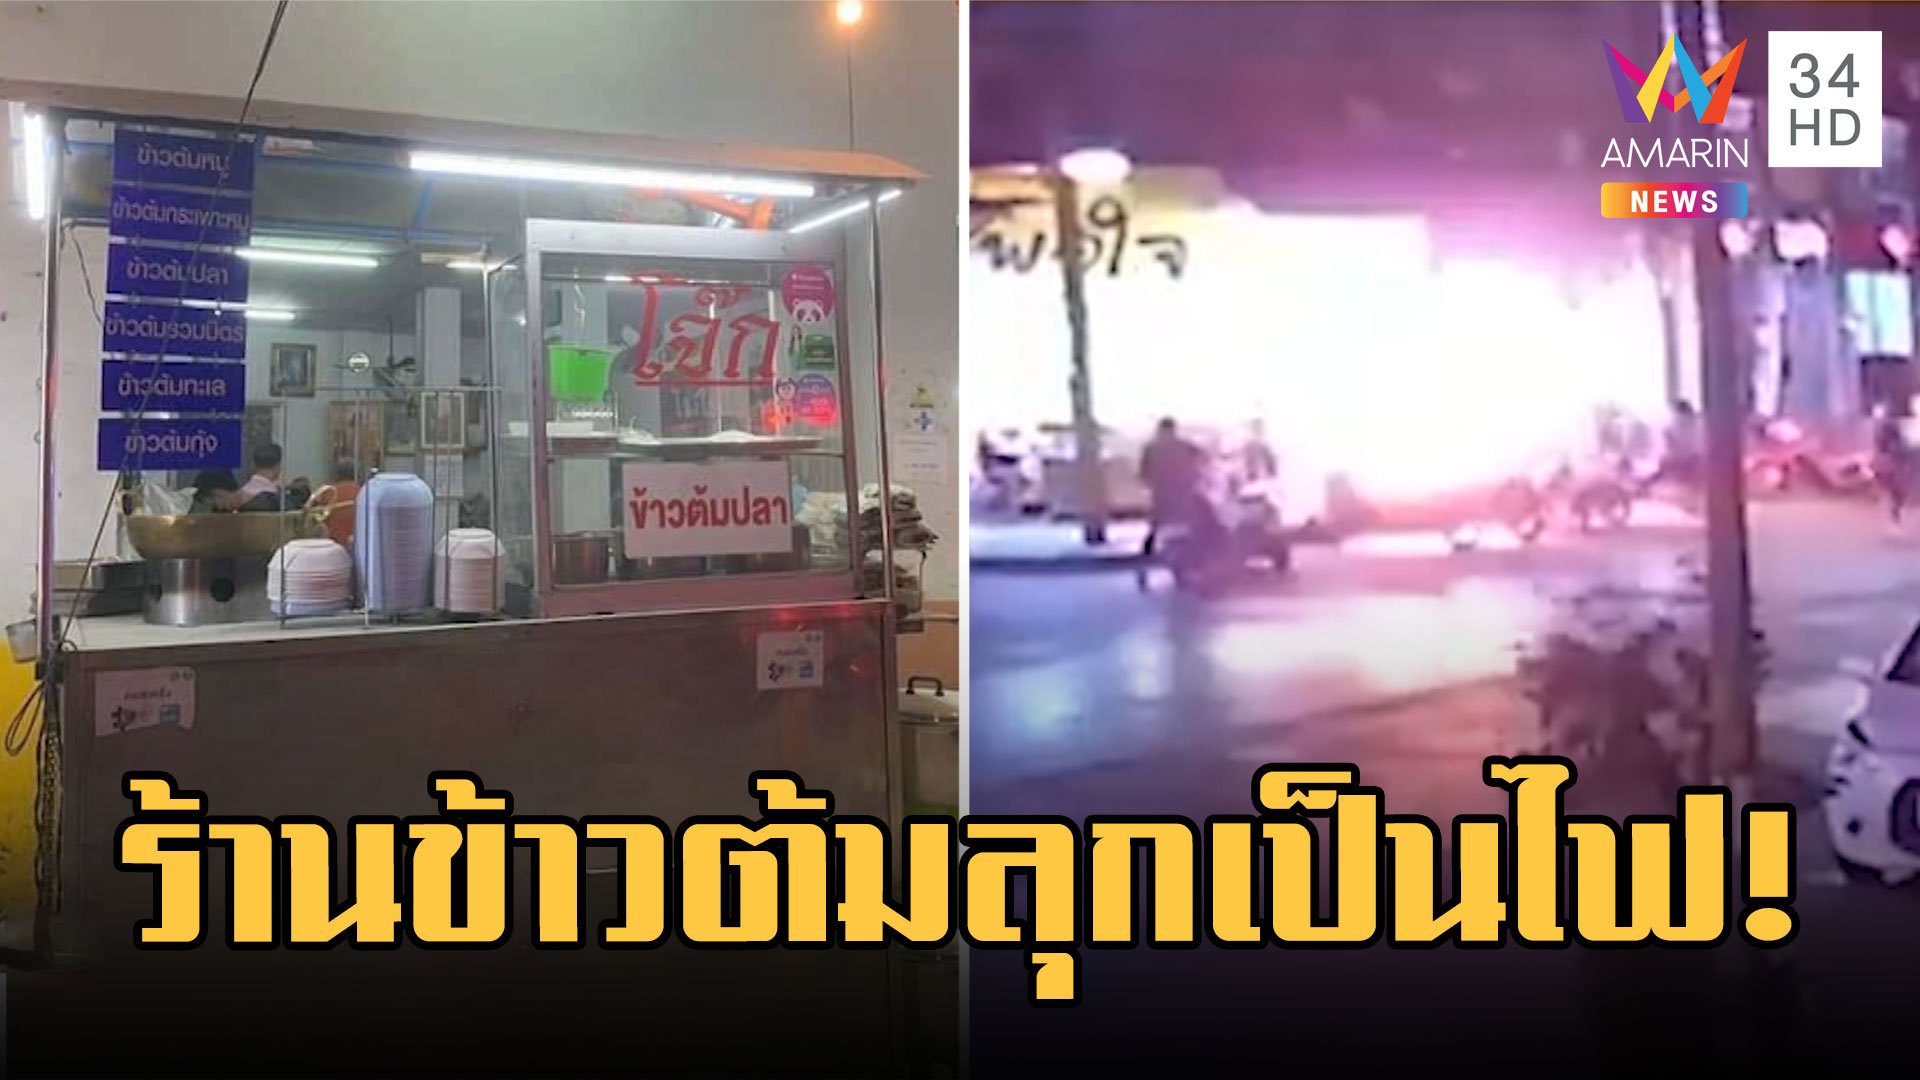 ร้านข้าวต้ม แก๊สระเบิดลุกเป็นไฟ! ลูกค้าหนีตายวุ่น | ข่าวอรุณอมรินทร์ | 2 มี.ค. 66 | AMARIN TVHD34